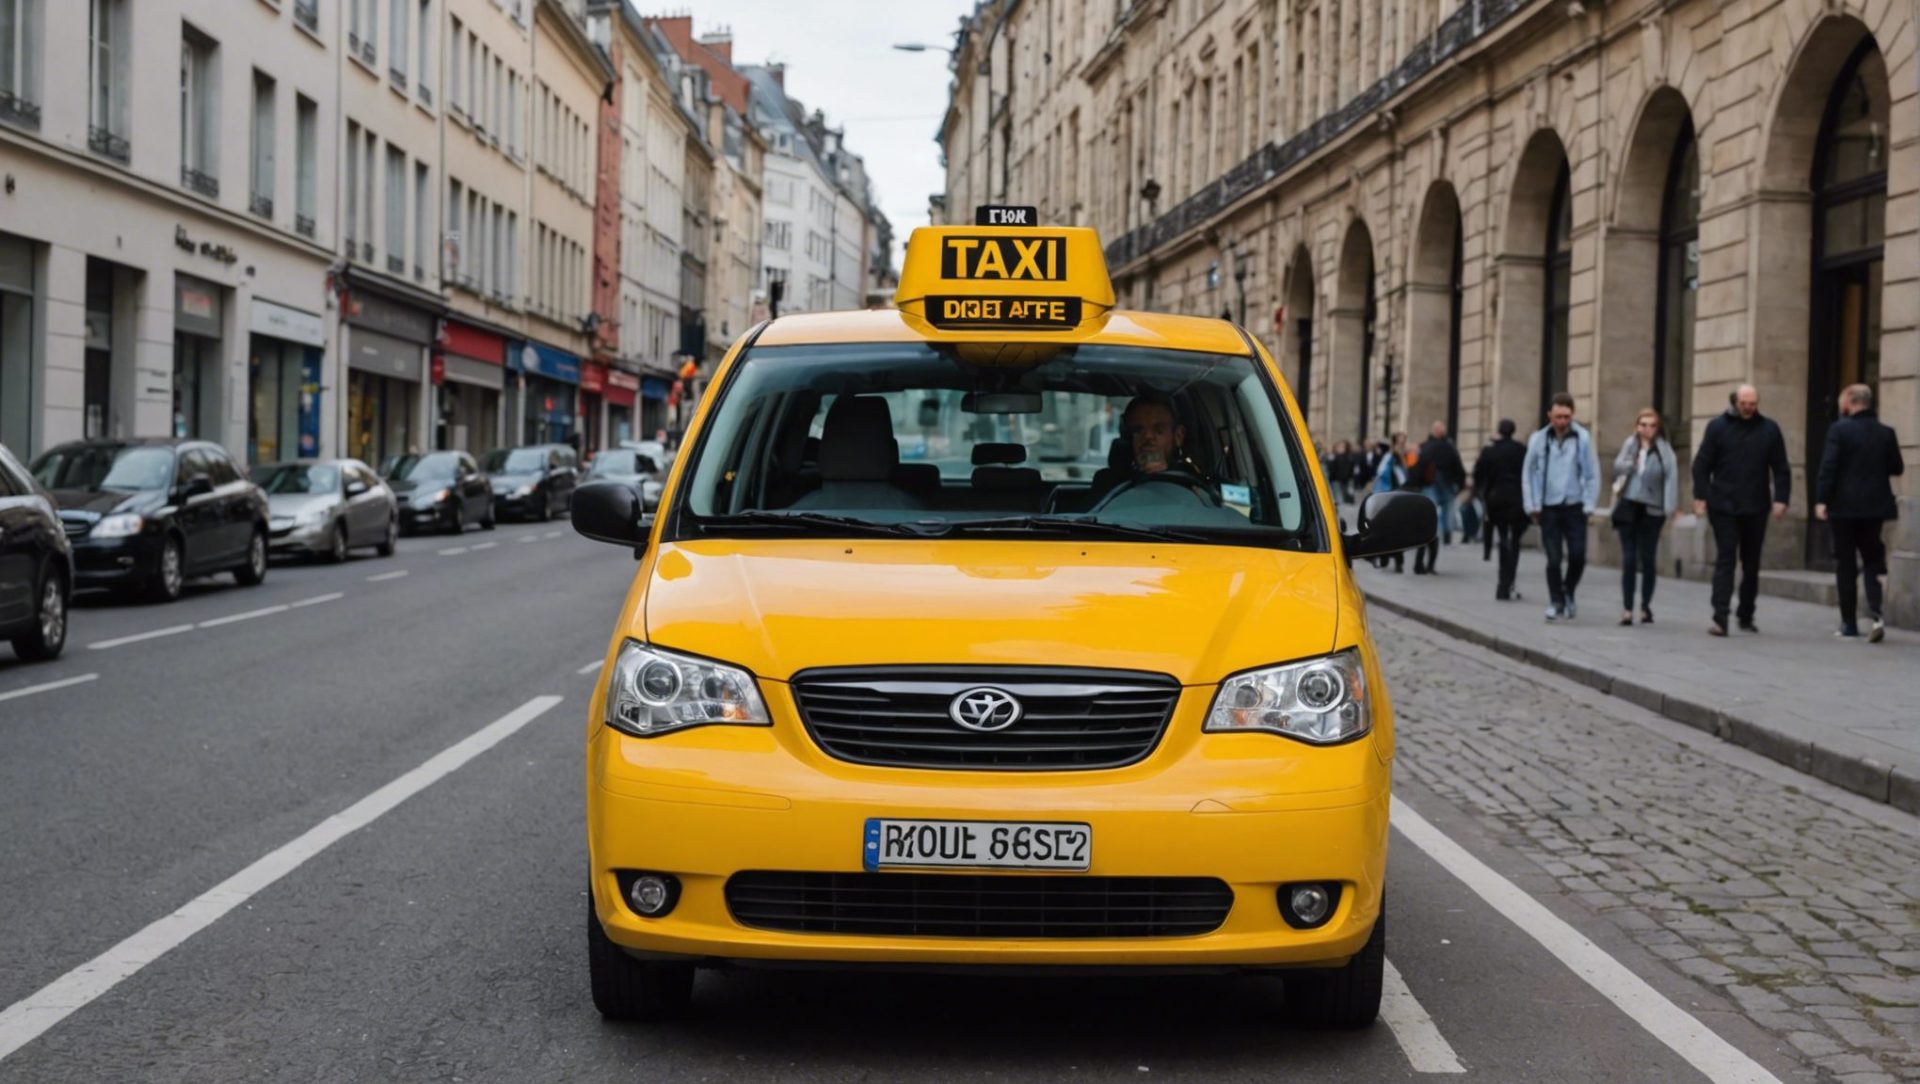 découvrez le prix moyen d'un taxi à liège et les facteurs qui influent sur le coût de votre trajet. obtenez des informations utiles pour planifier vos déplacements en taxi à liège.